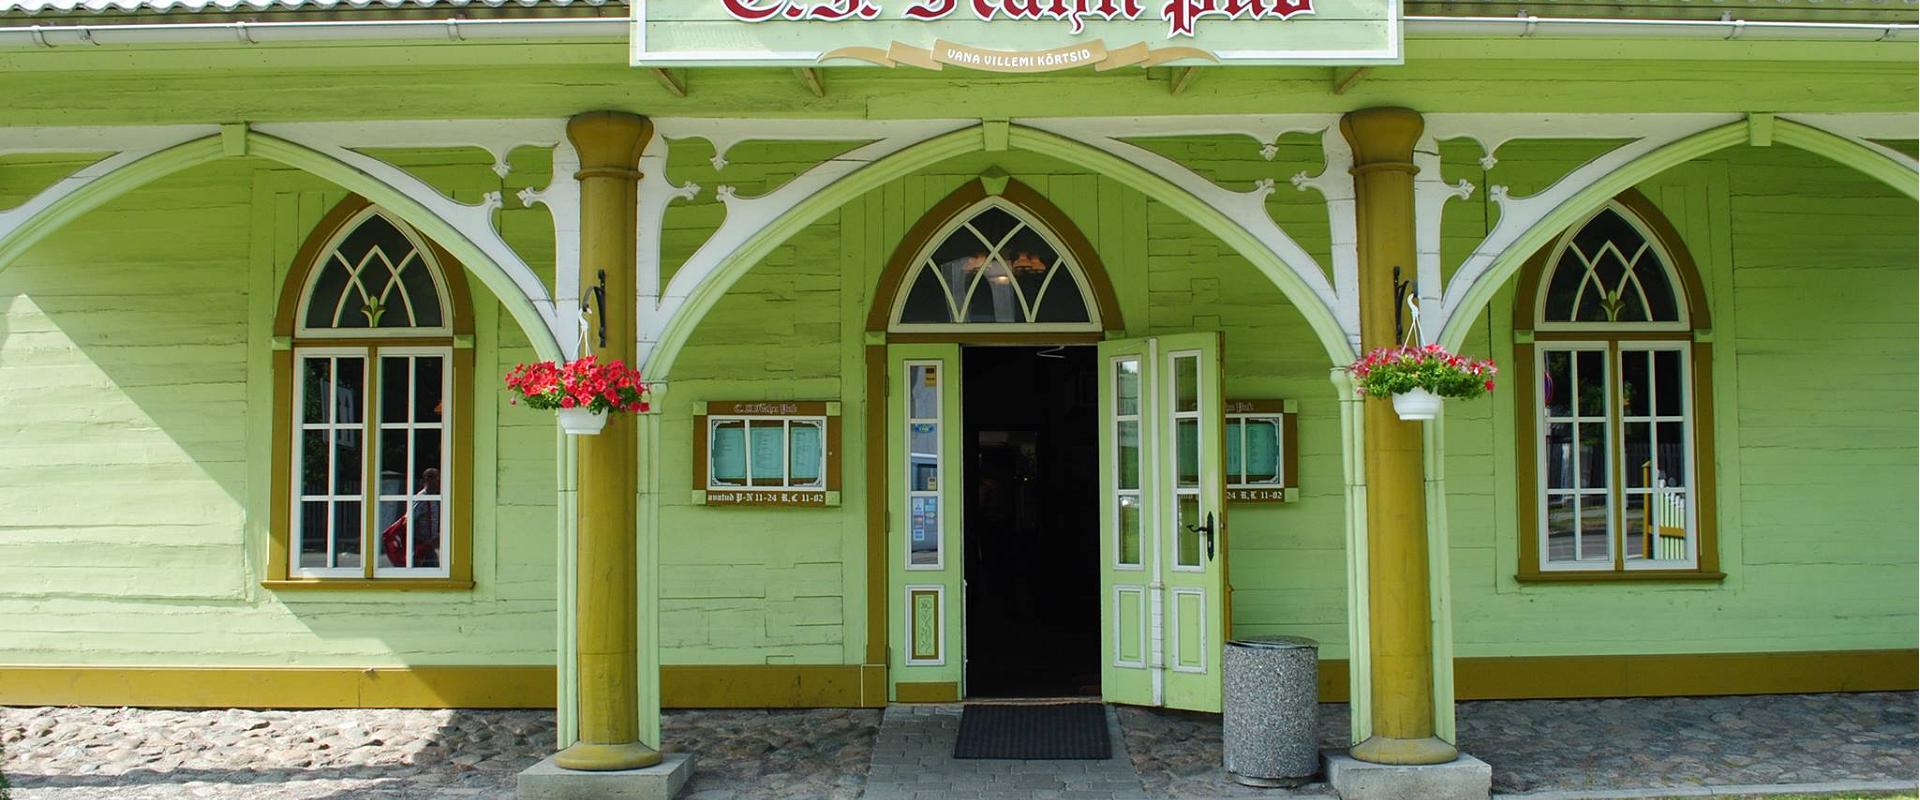 C.F. Hahn Pub